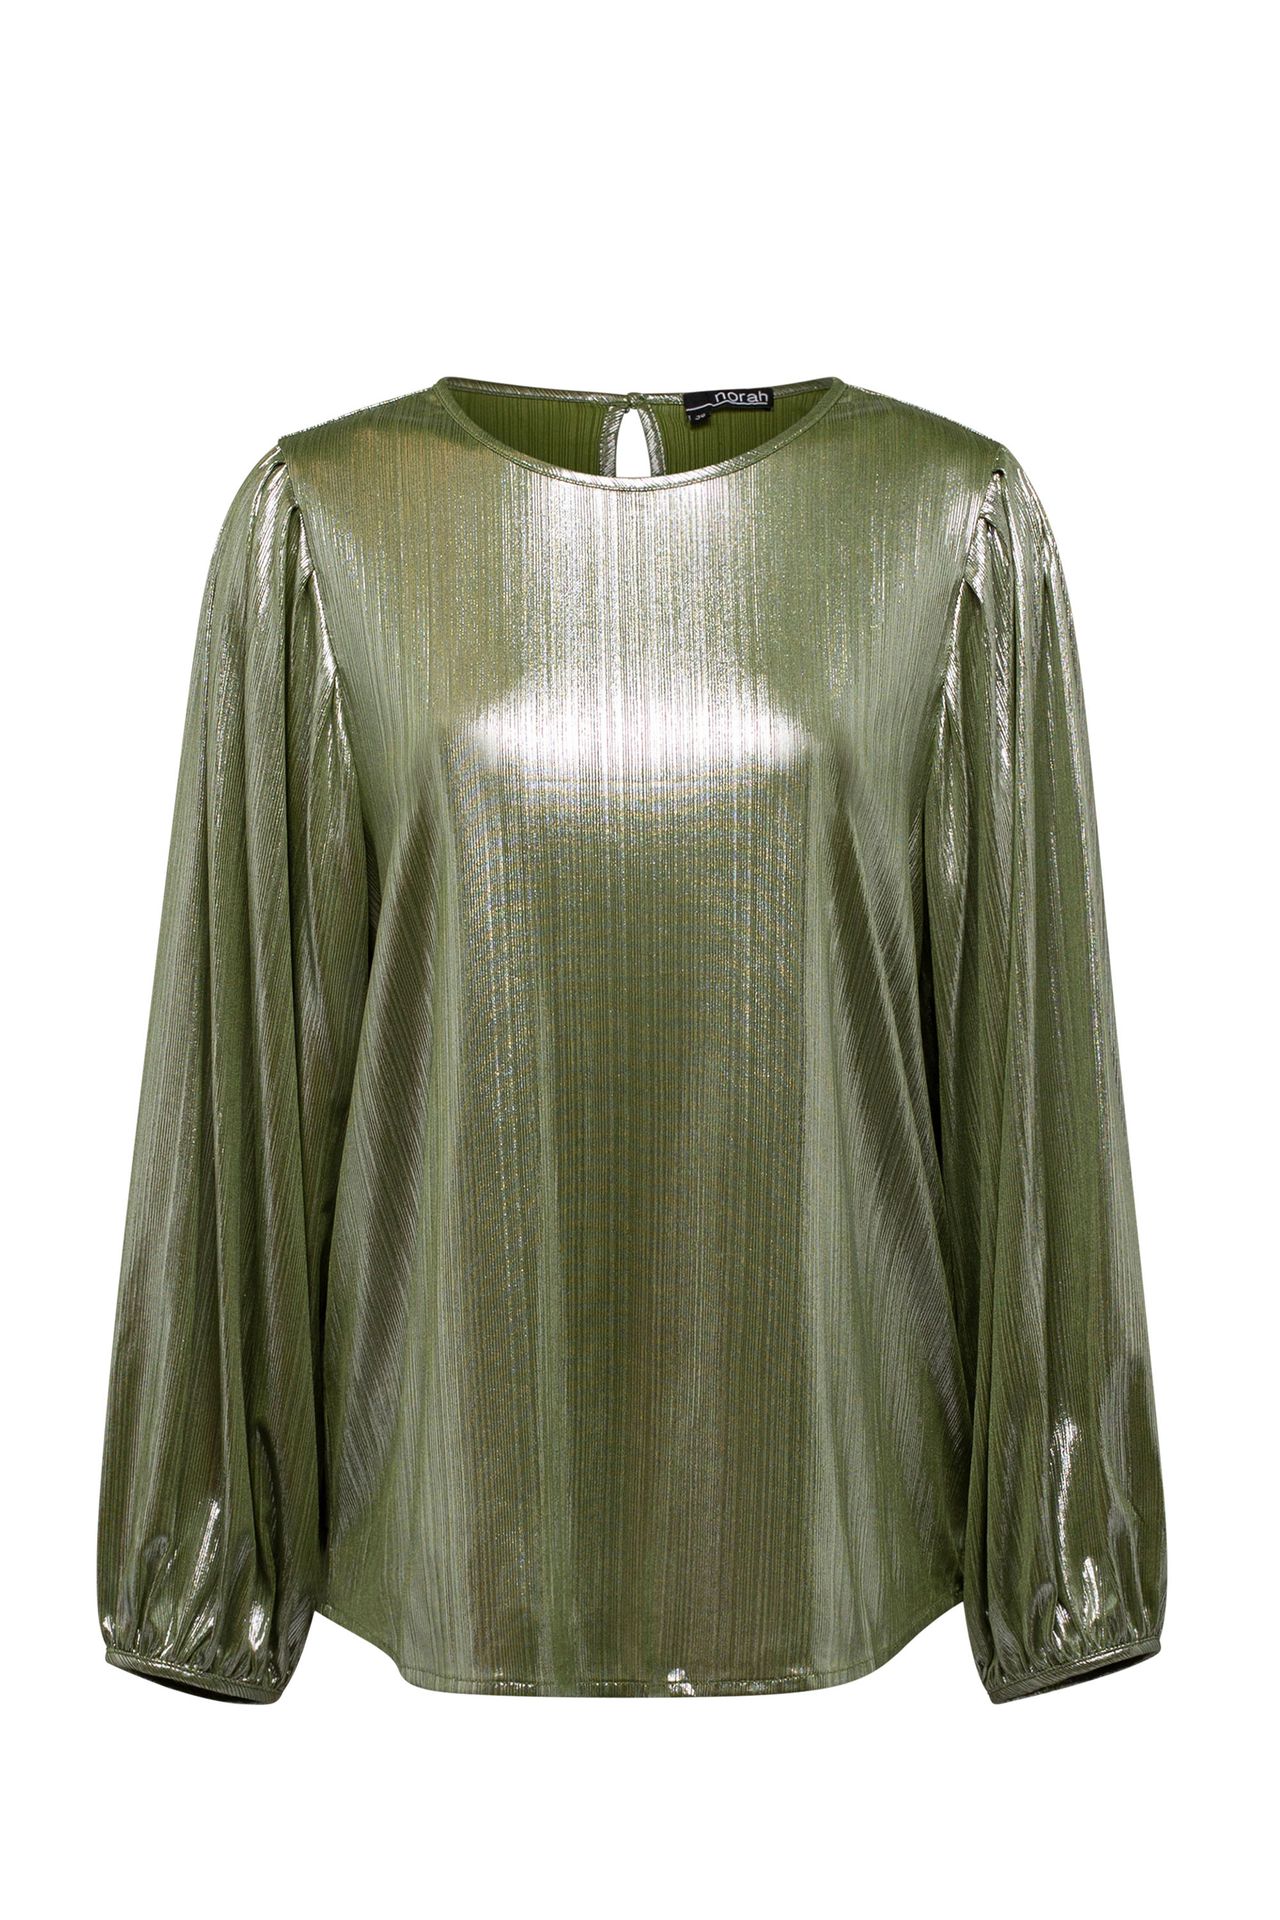 Norah Shirt groen green 213383-500